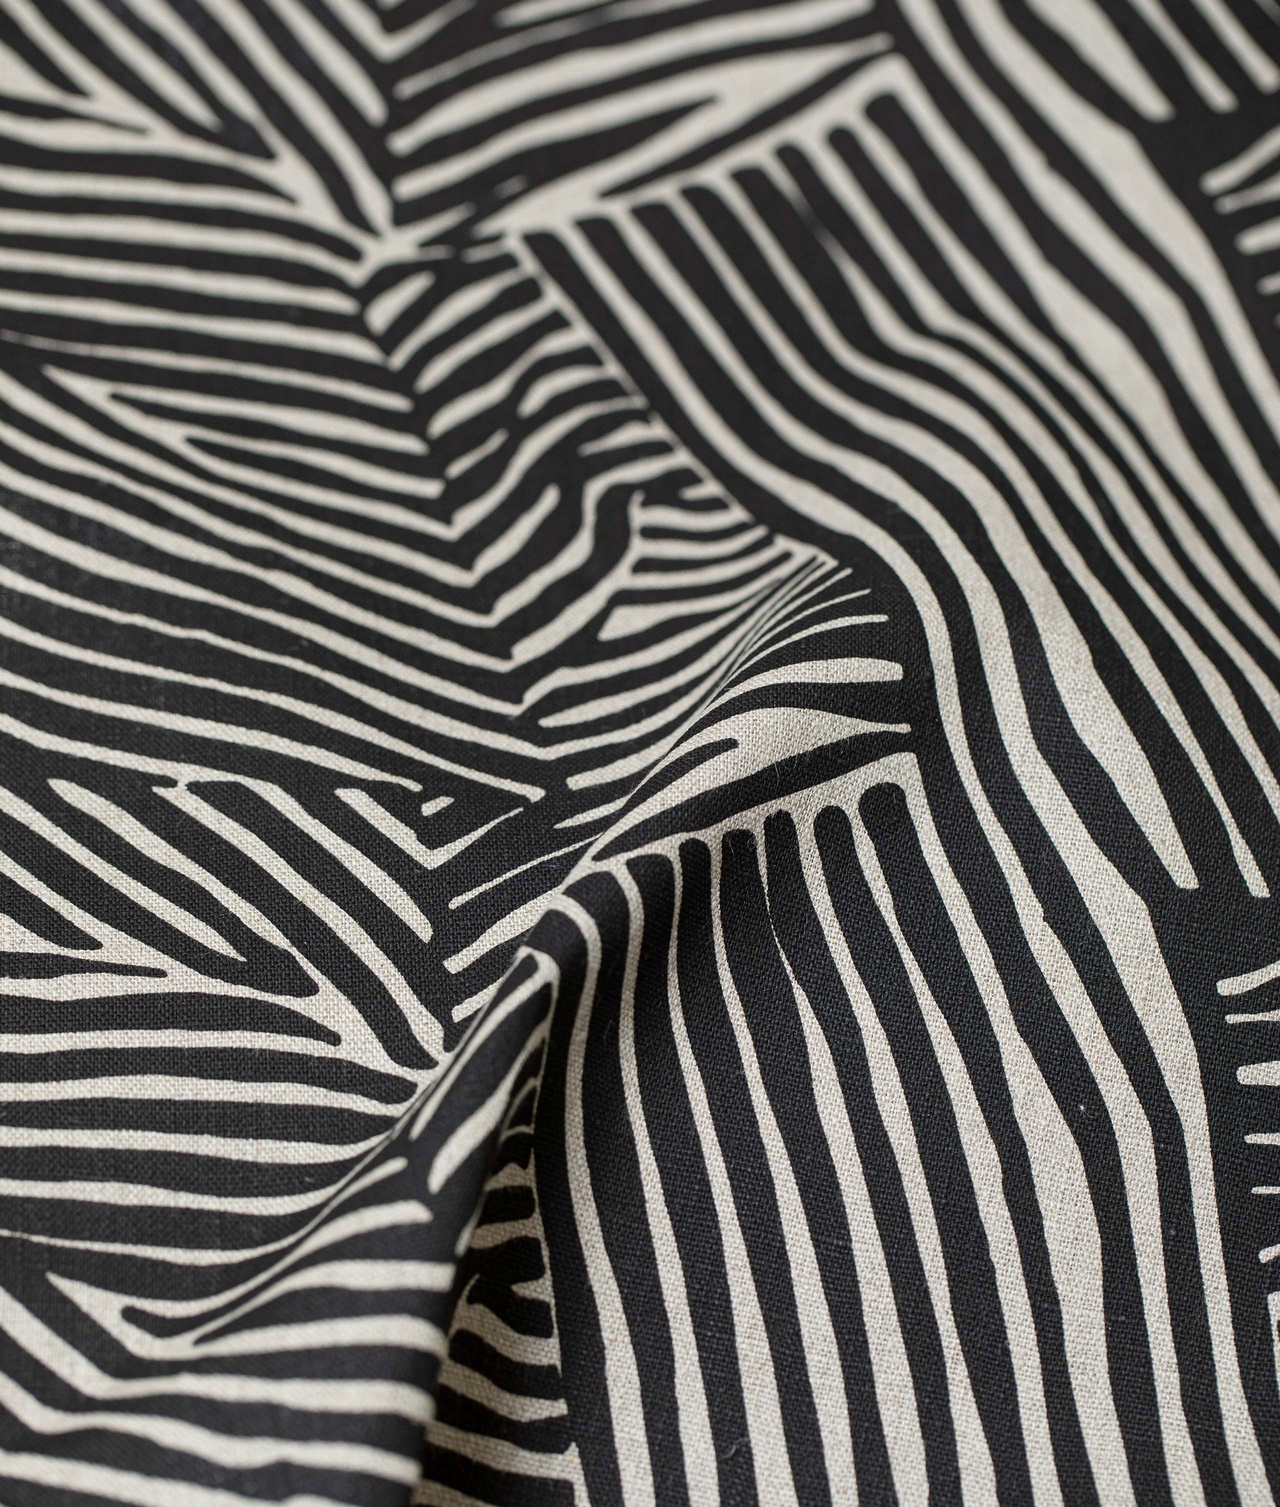 Sample Linen fabric ”FLÄTVERK" Black